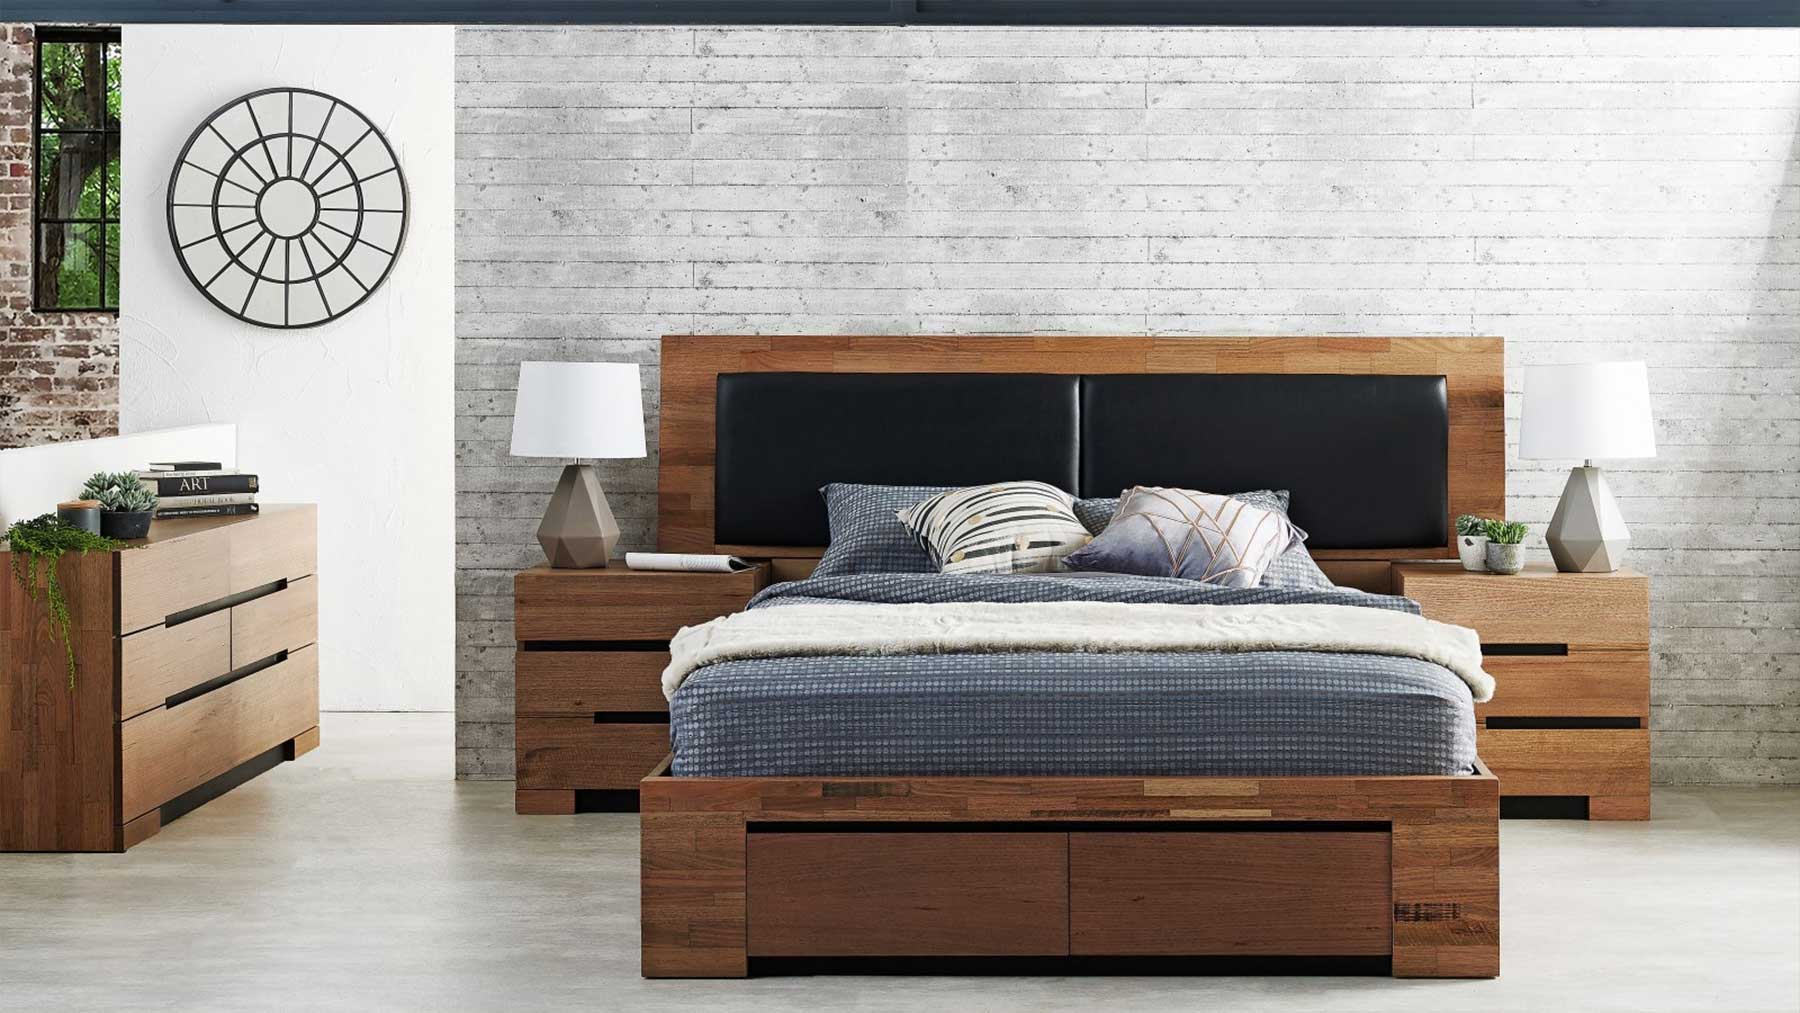 Giường ngủ hiện đại gỗ sồi tự nhiên GHS-9001